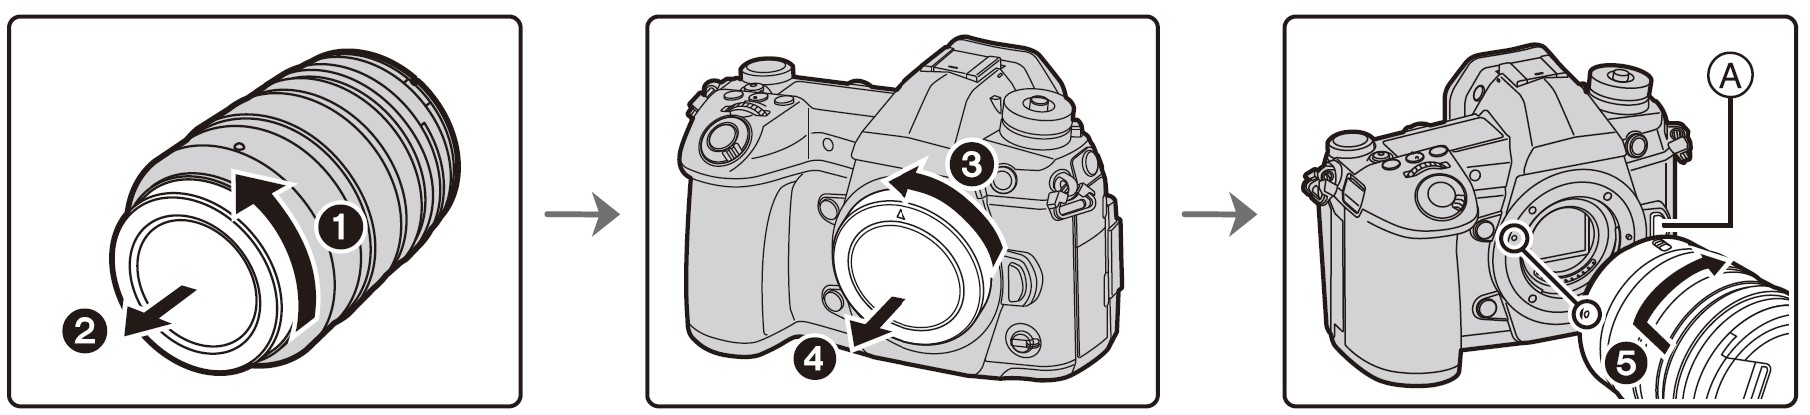 Panasonic-LUMIX-G9-4K-Digital-Camera-Owner-Manual-25